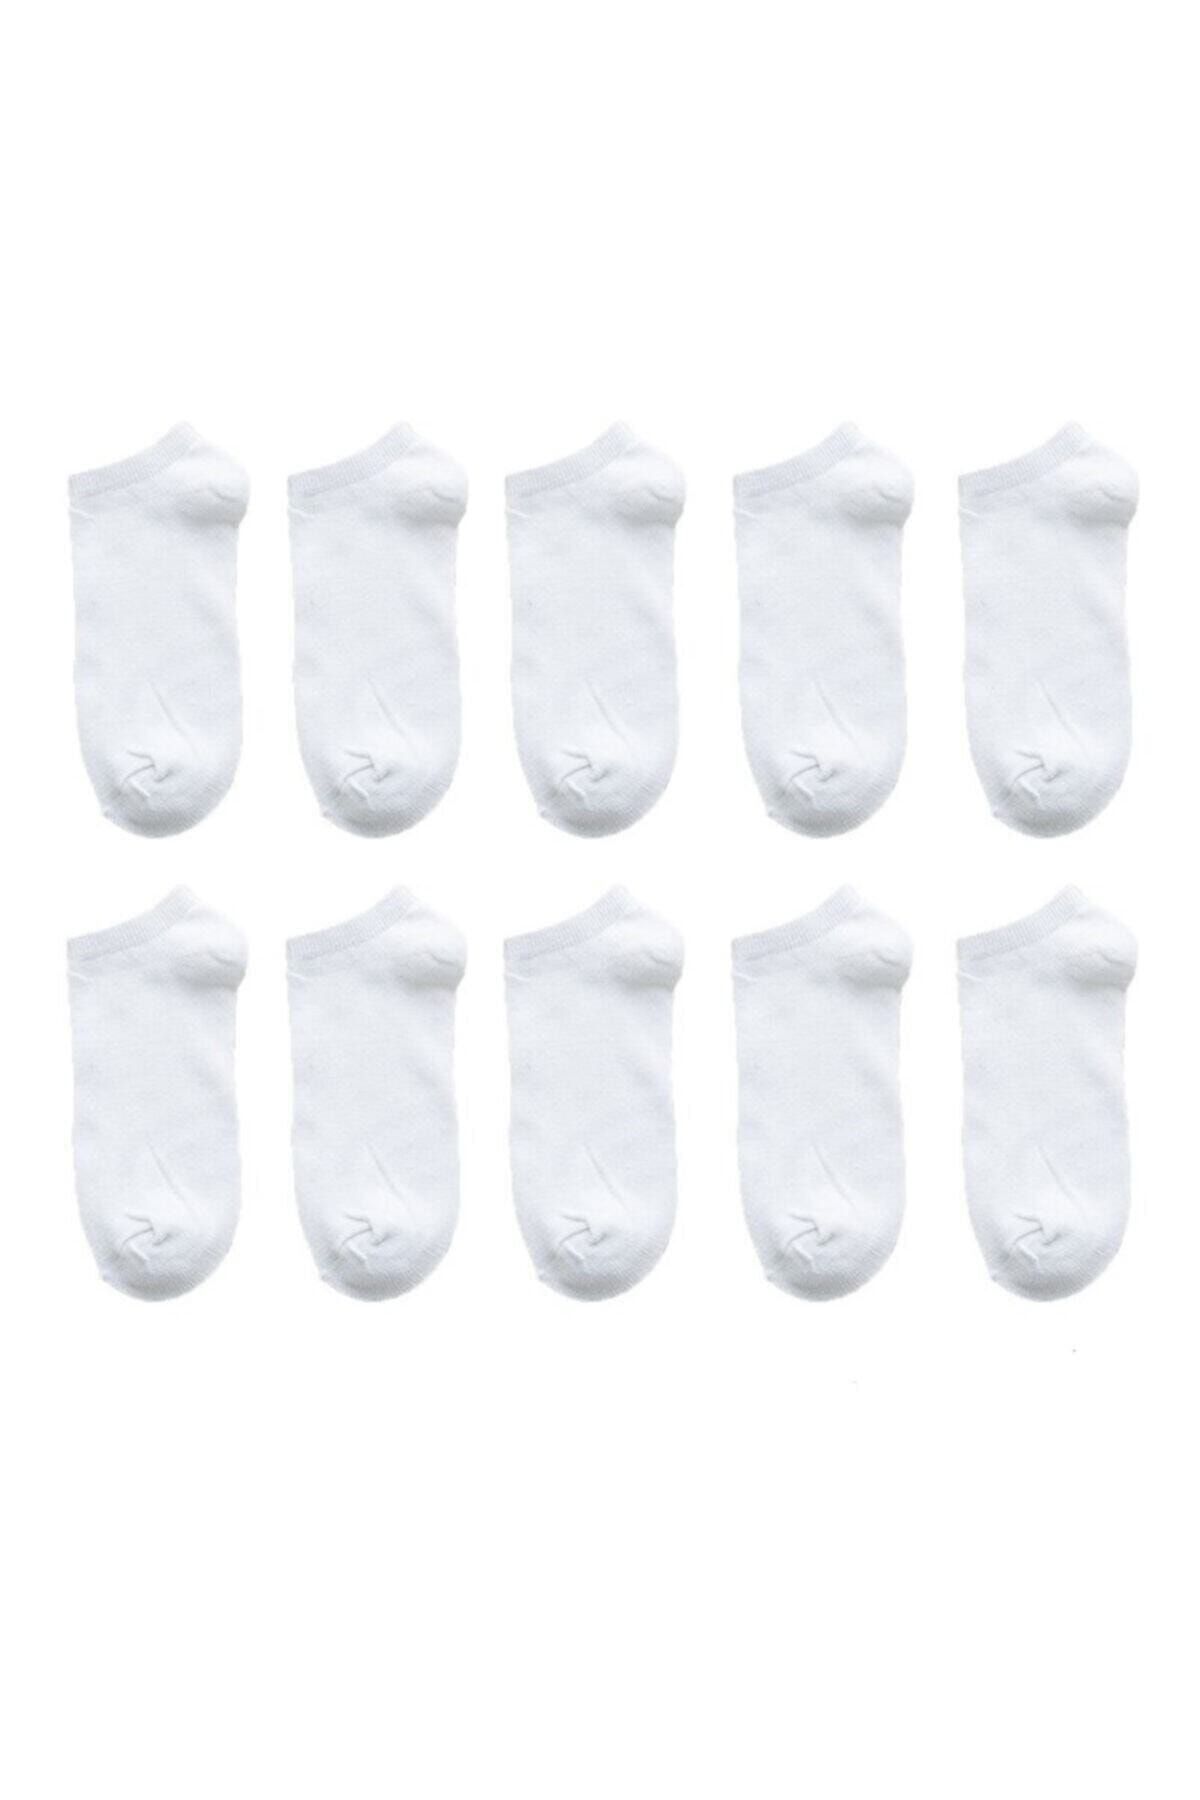 İkonik Socks Unisex 10 Çift Beyaz Patik Çorap